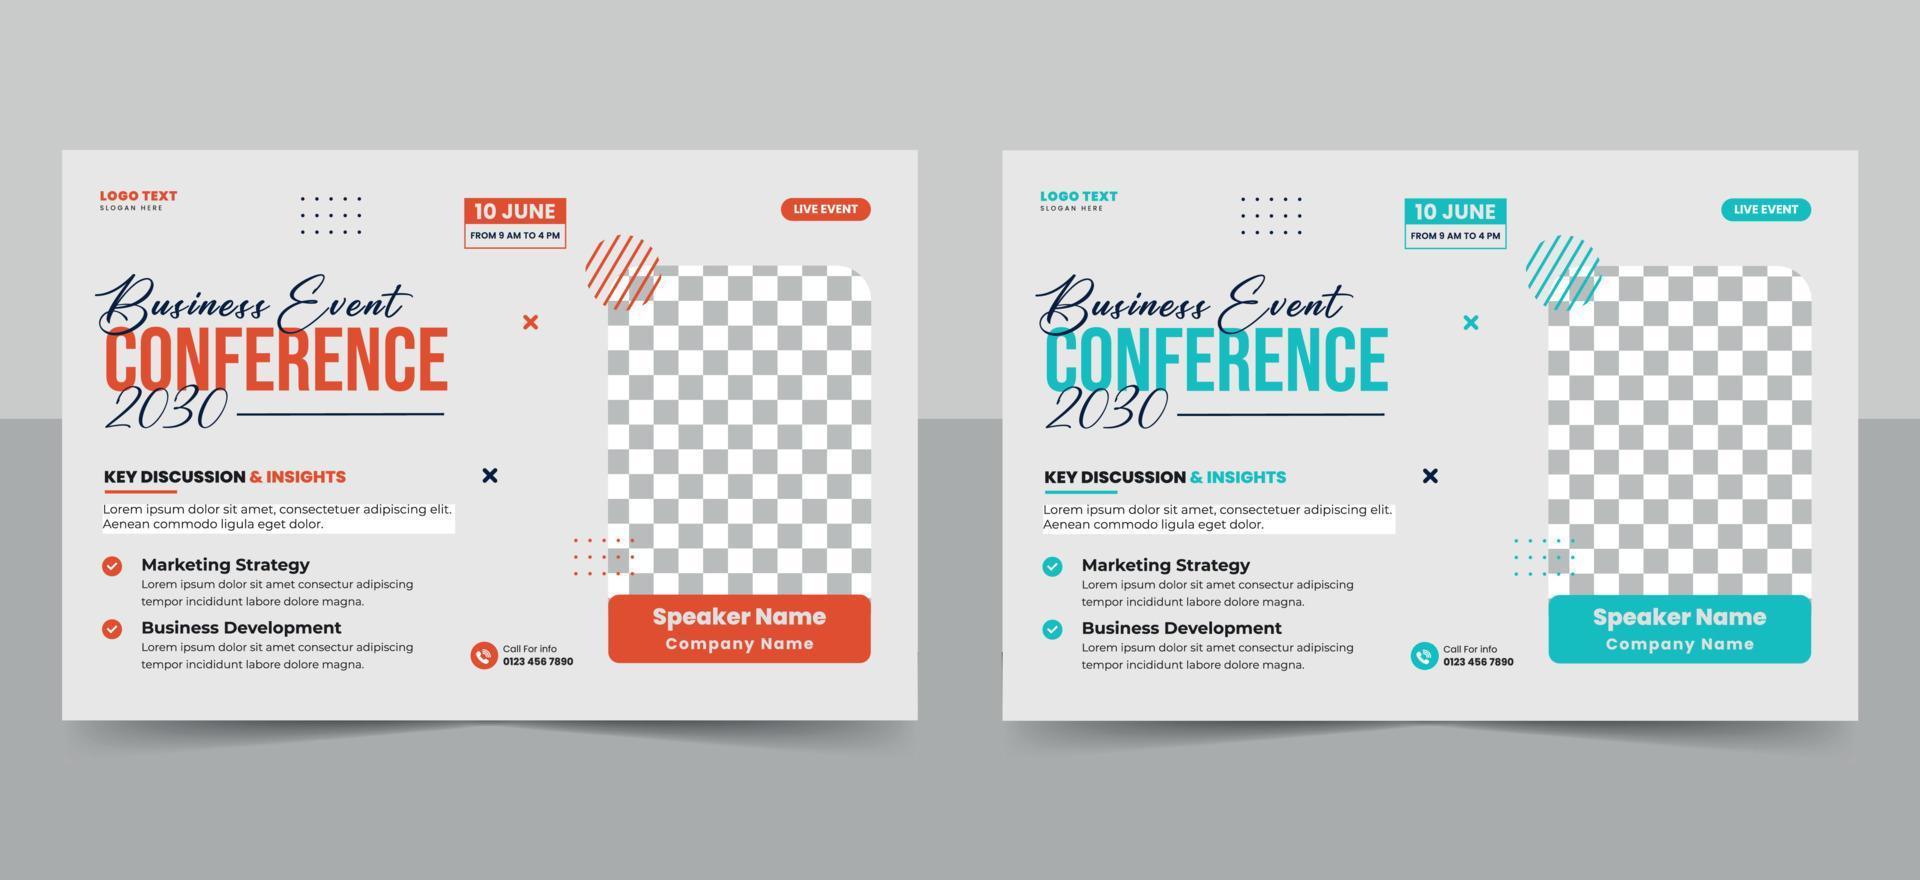 Abstract business conference flyer template or landscape Online live webinar poster banner design vector